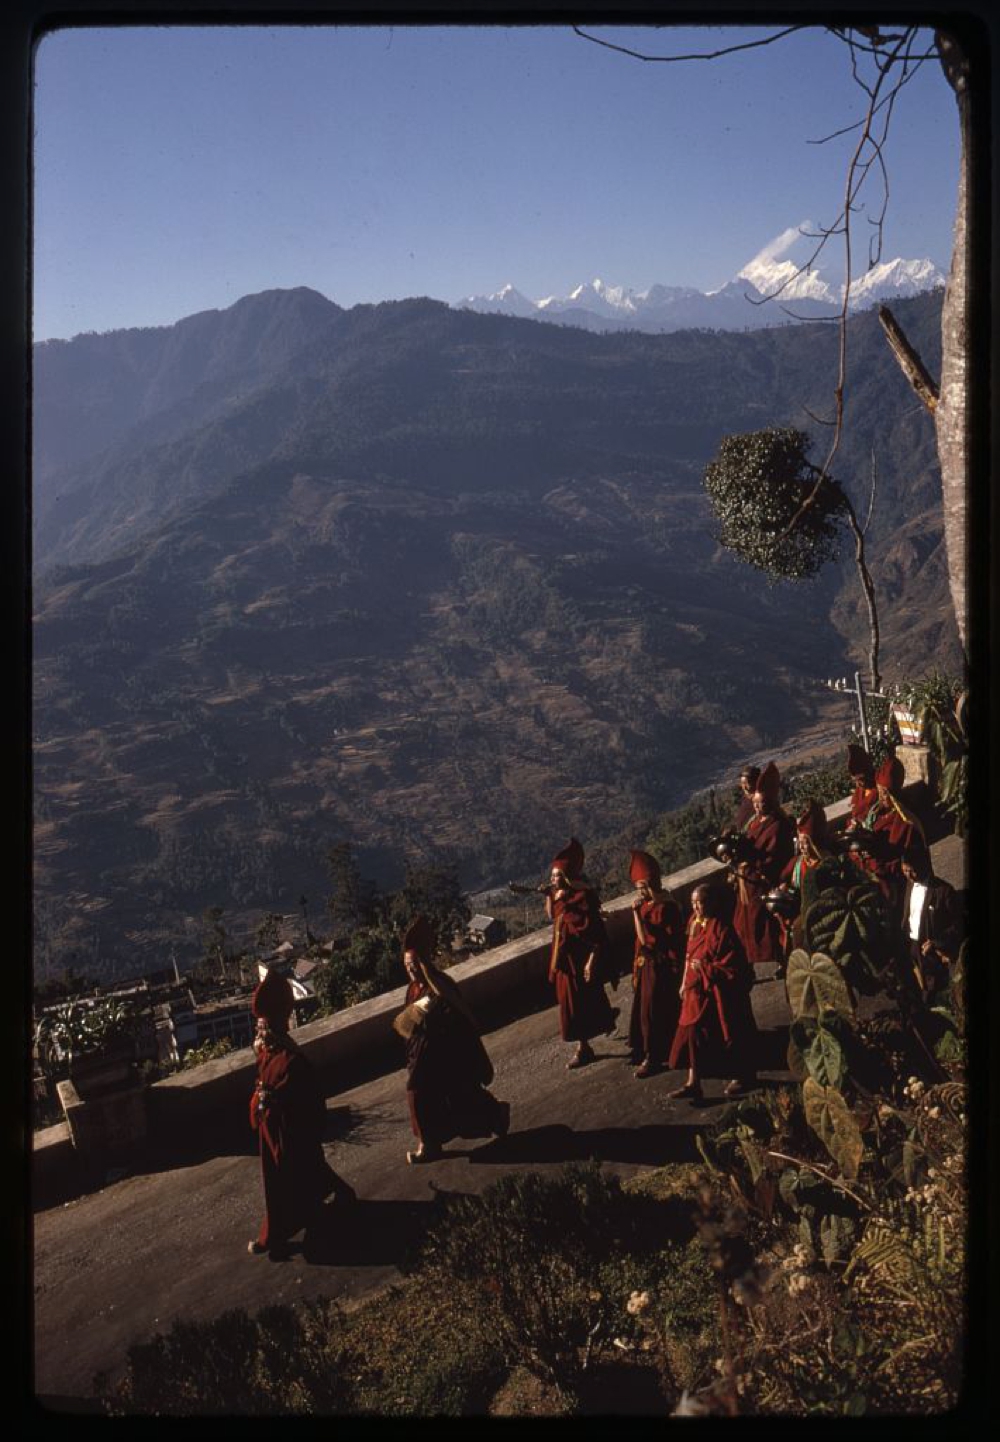 Monks parade down the mountain to perform religious sacrifice, Sikkim